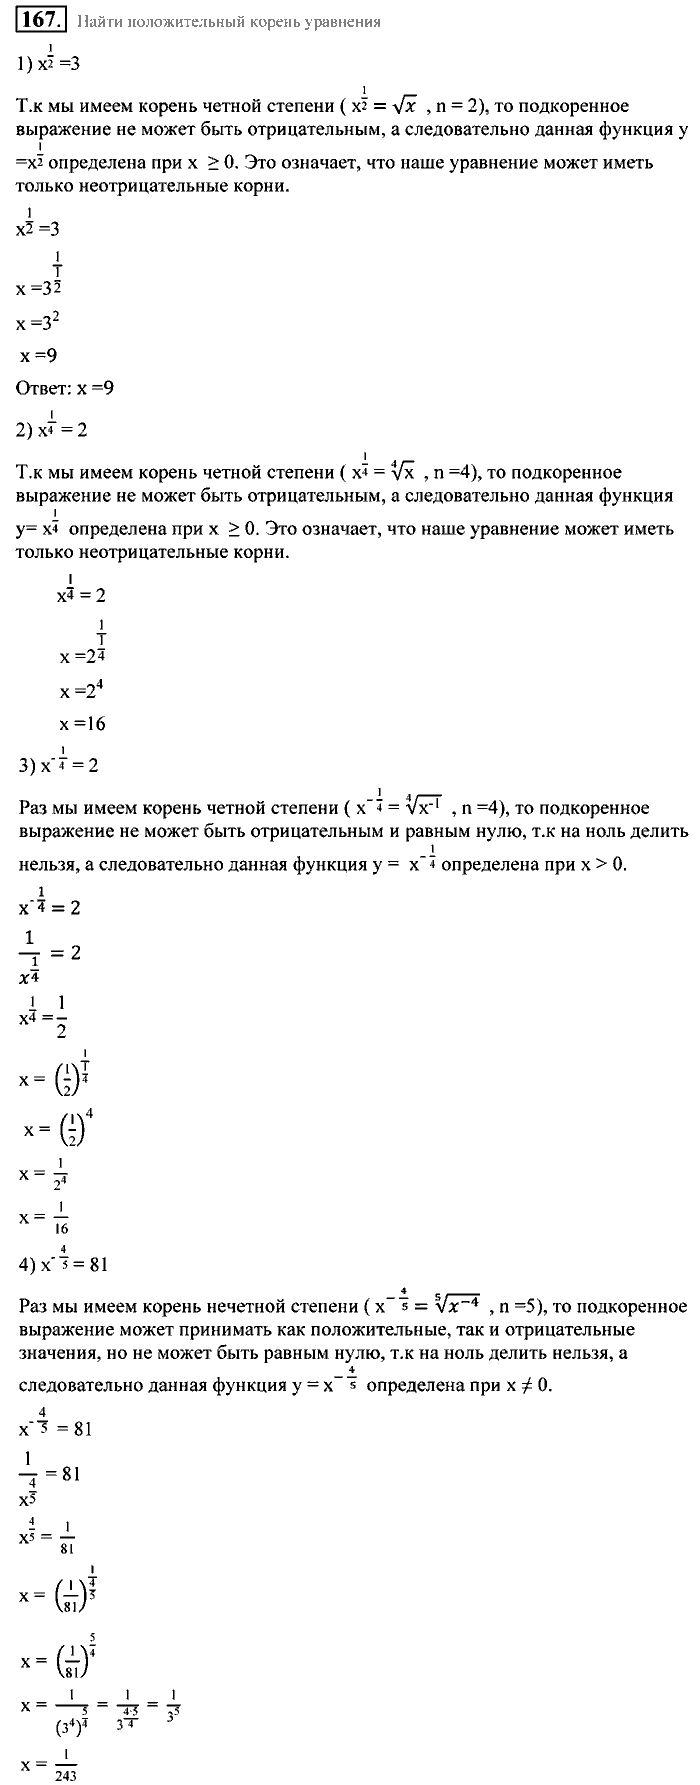 Алгебра, 9 класс, Алимов, Колягин, 2001, Проверь себя Задание: 167